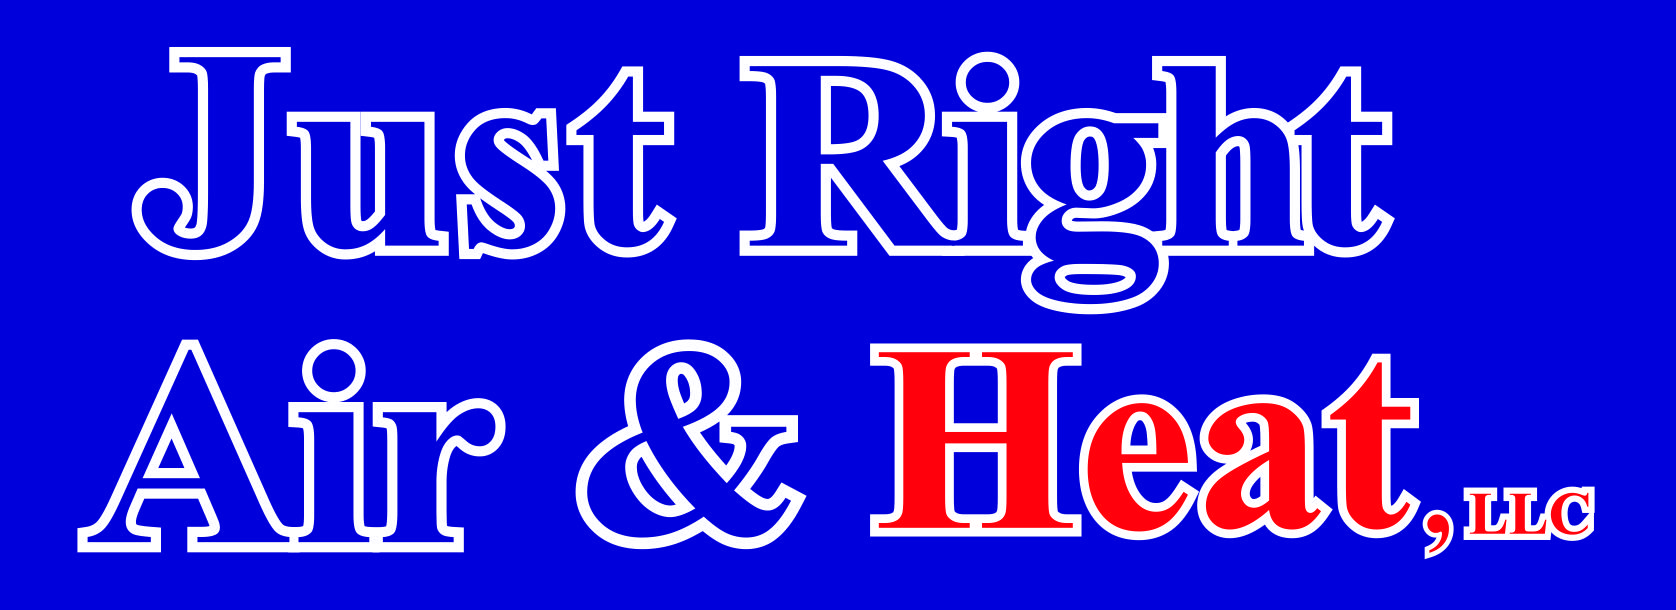 Just Right Air & Heat, LLC